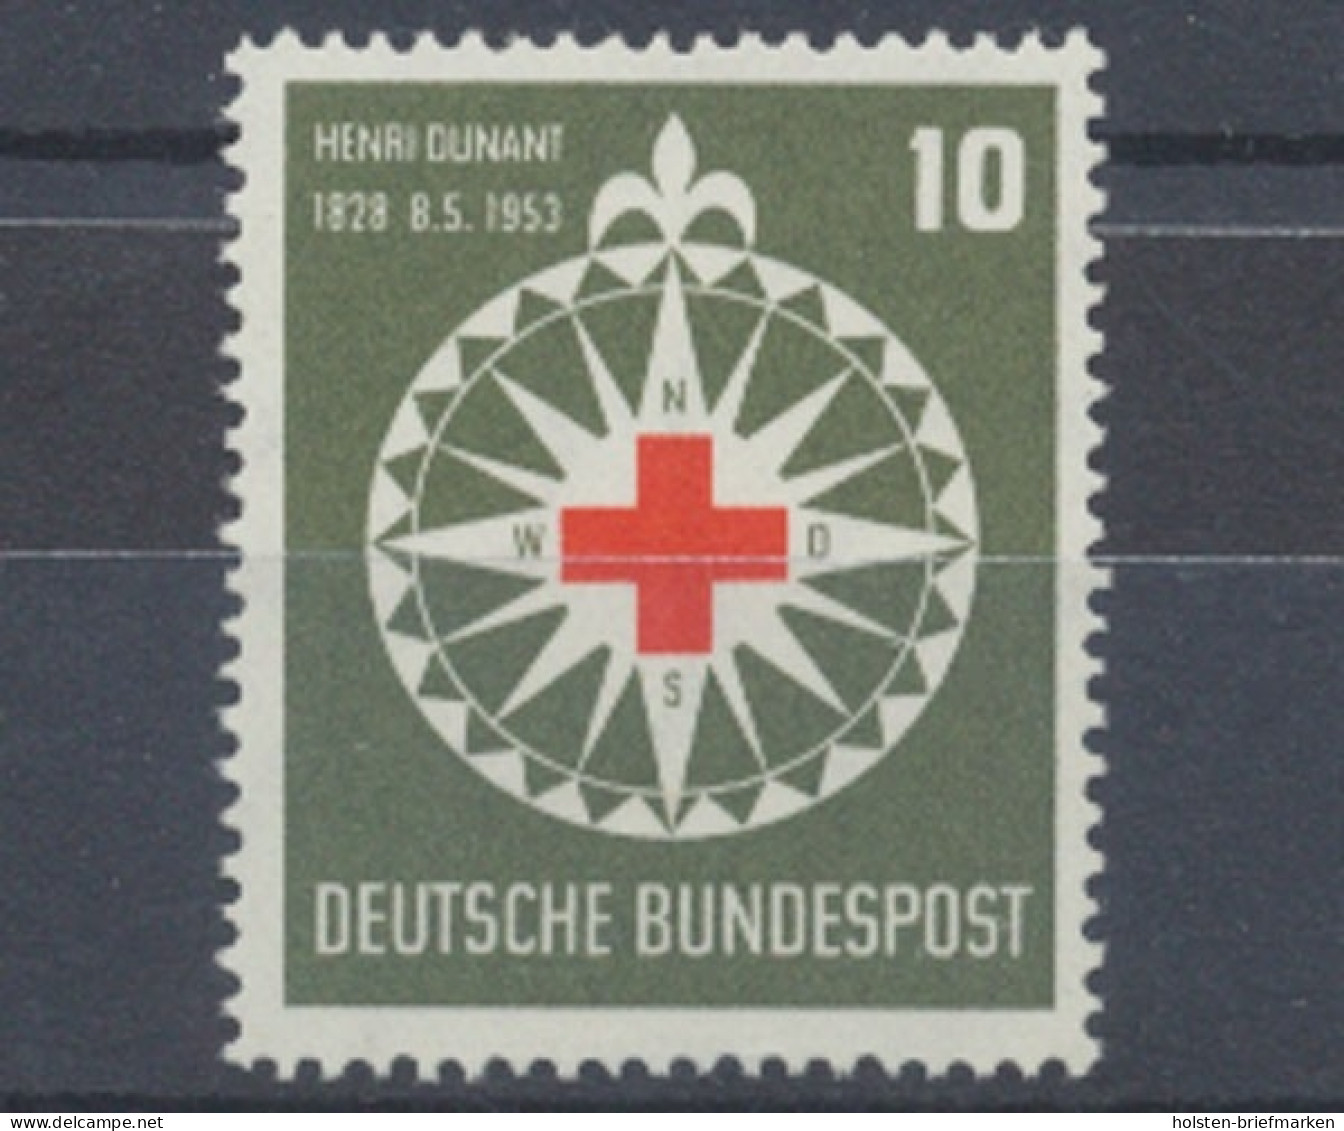 Deutschland (BRD), MiNr. 164, Postfrisch - Neufs